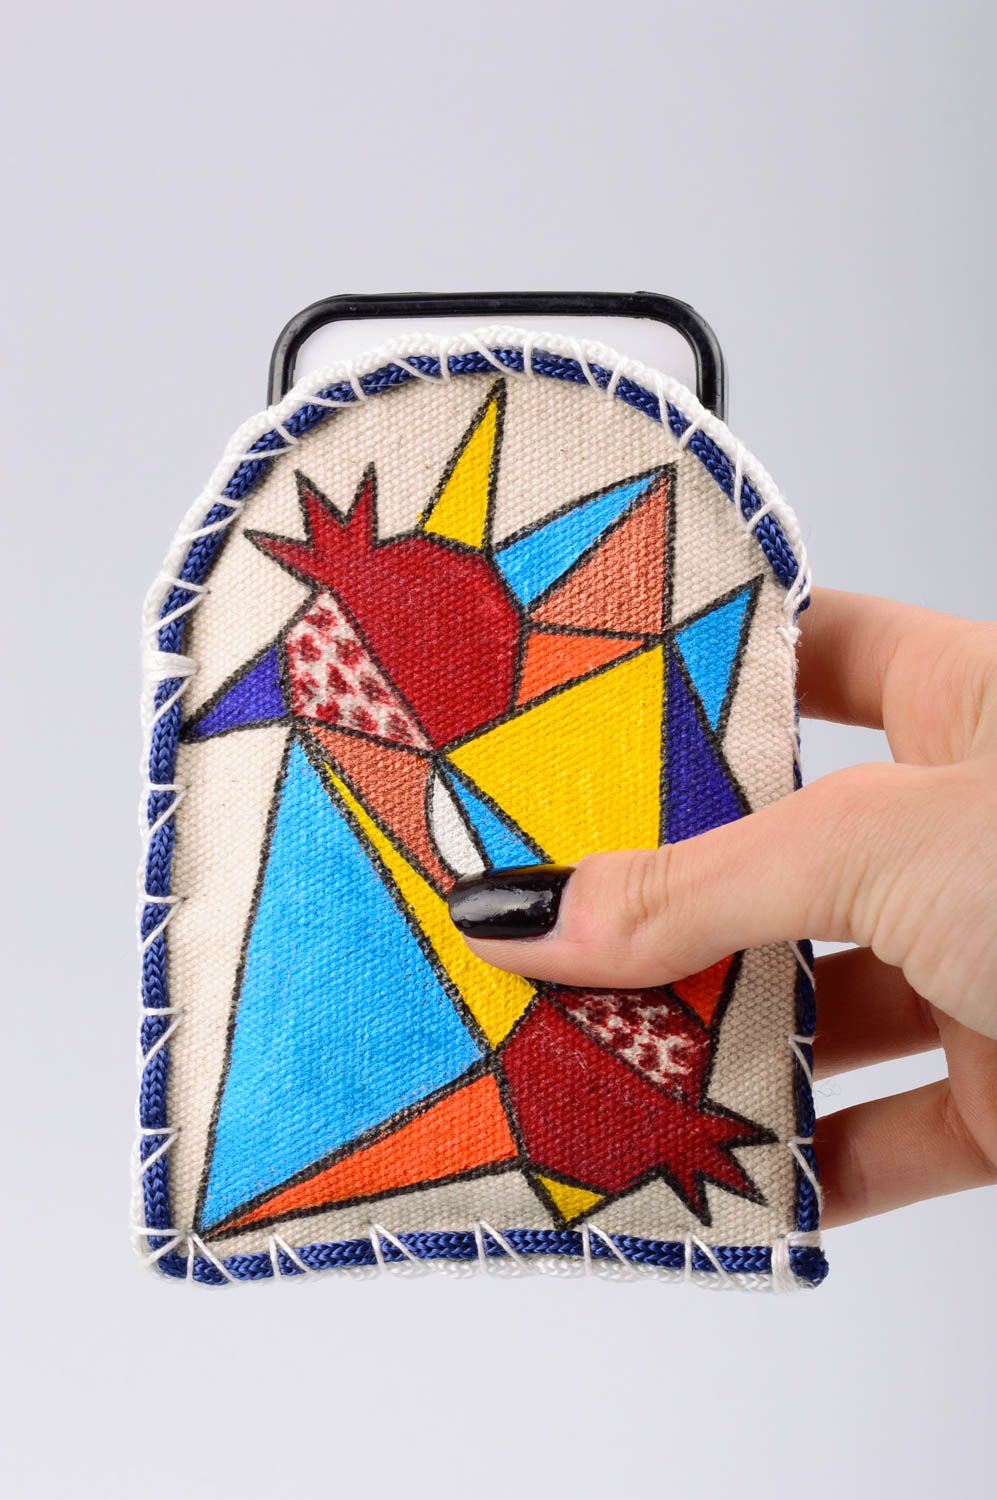 Чехол для телефона из ткани расписной красивый необычный цветной ручная работа фото 3